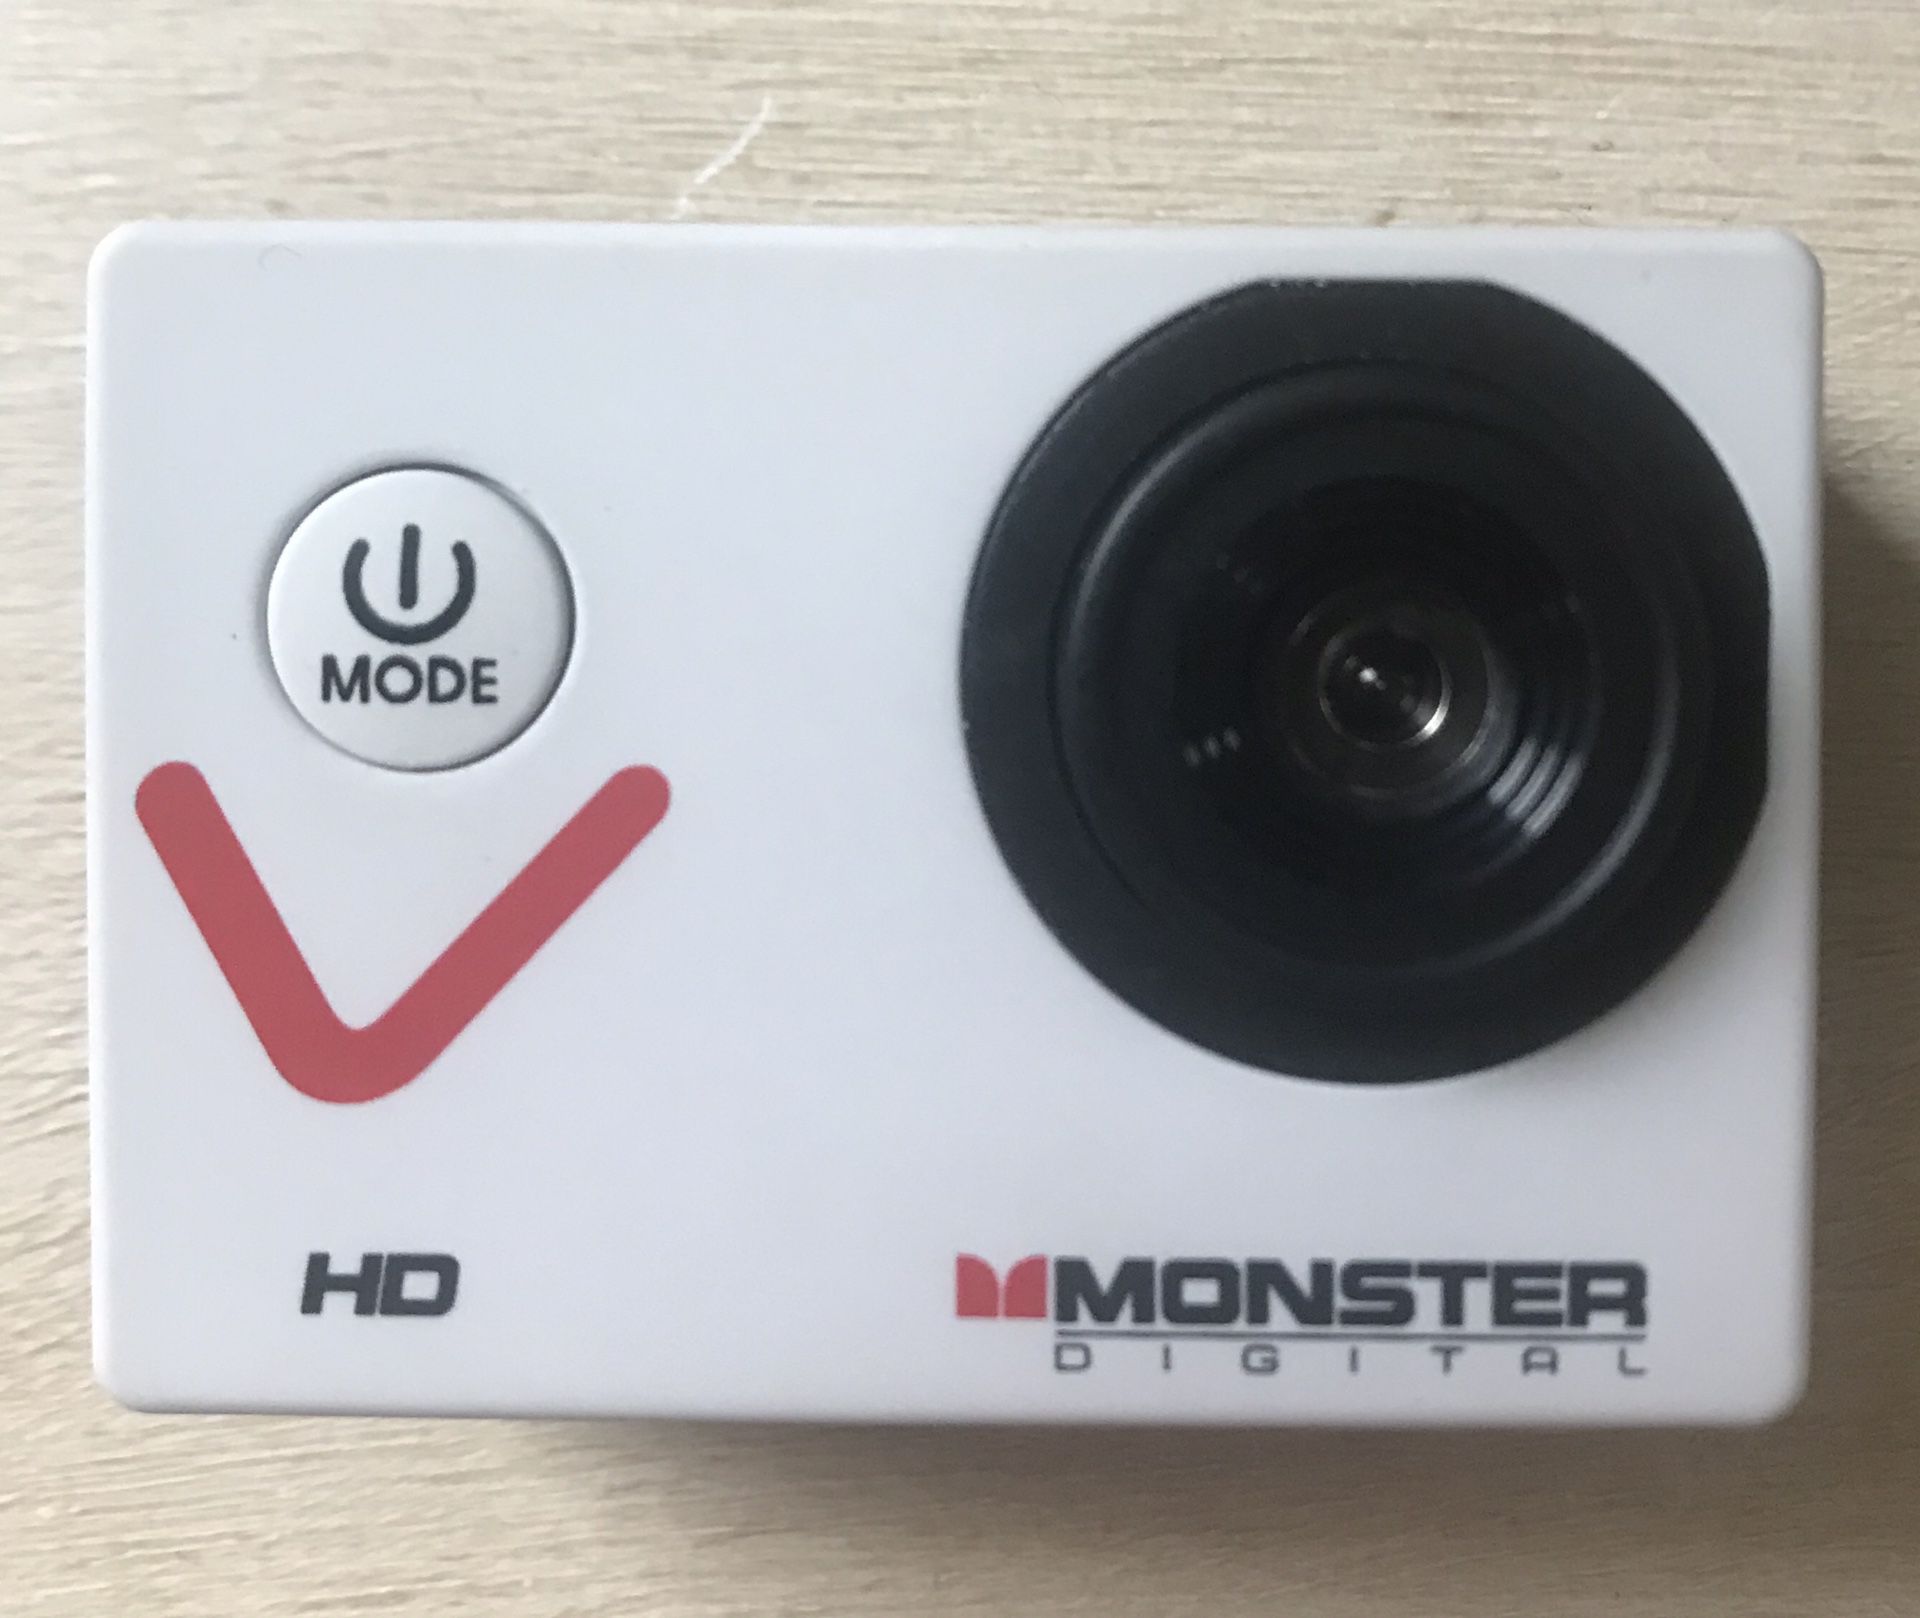 Monster digital HD action camera